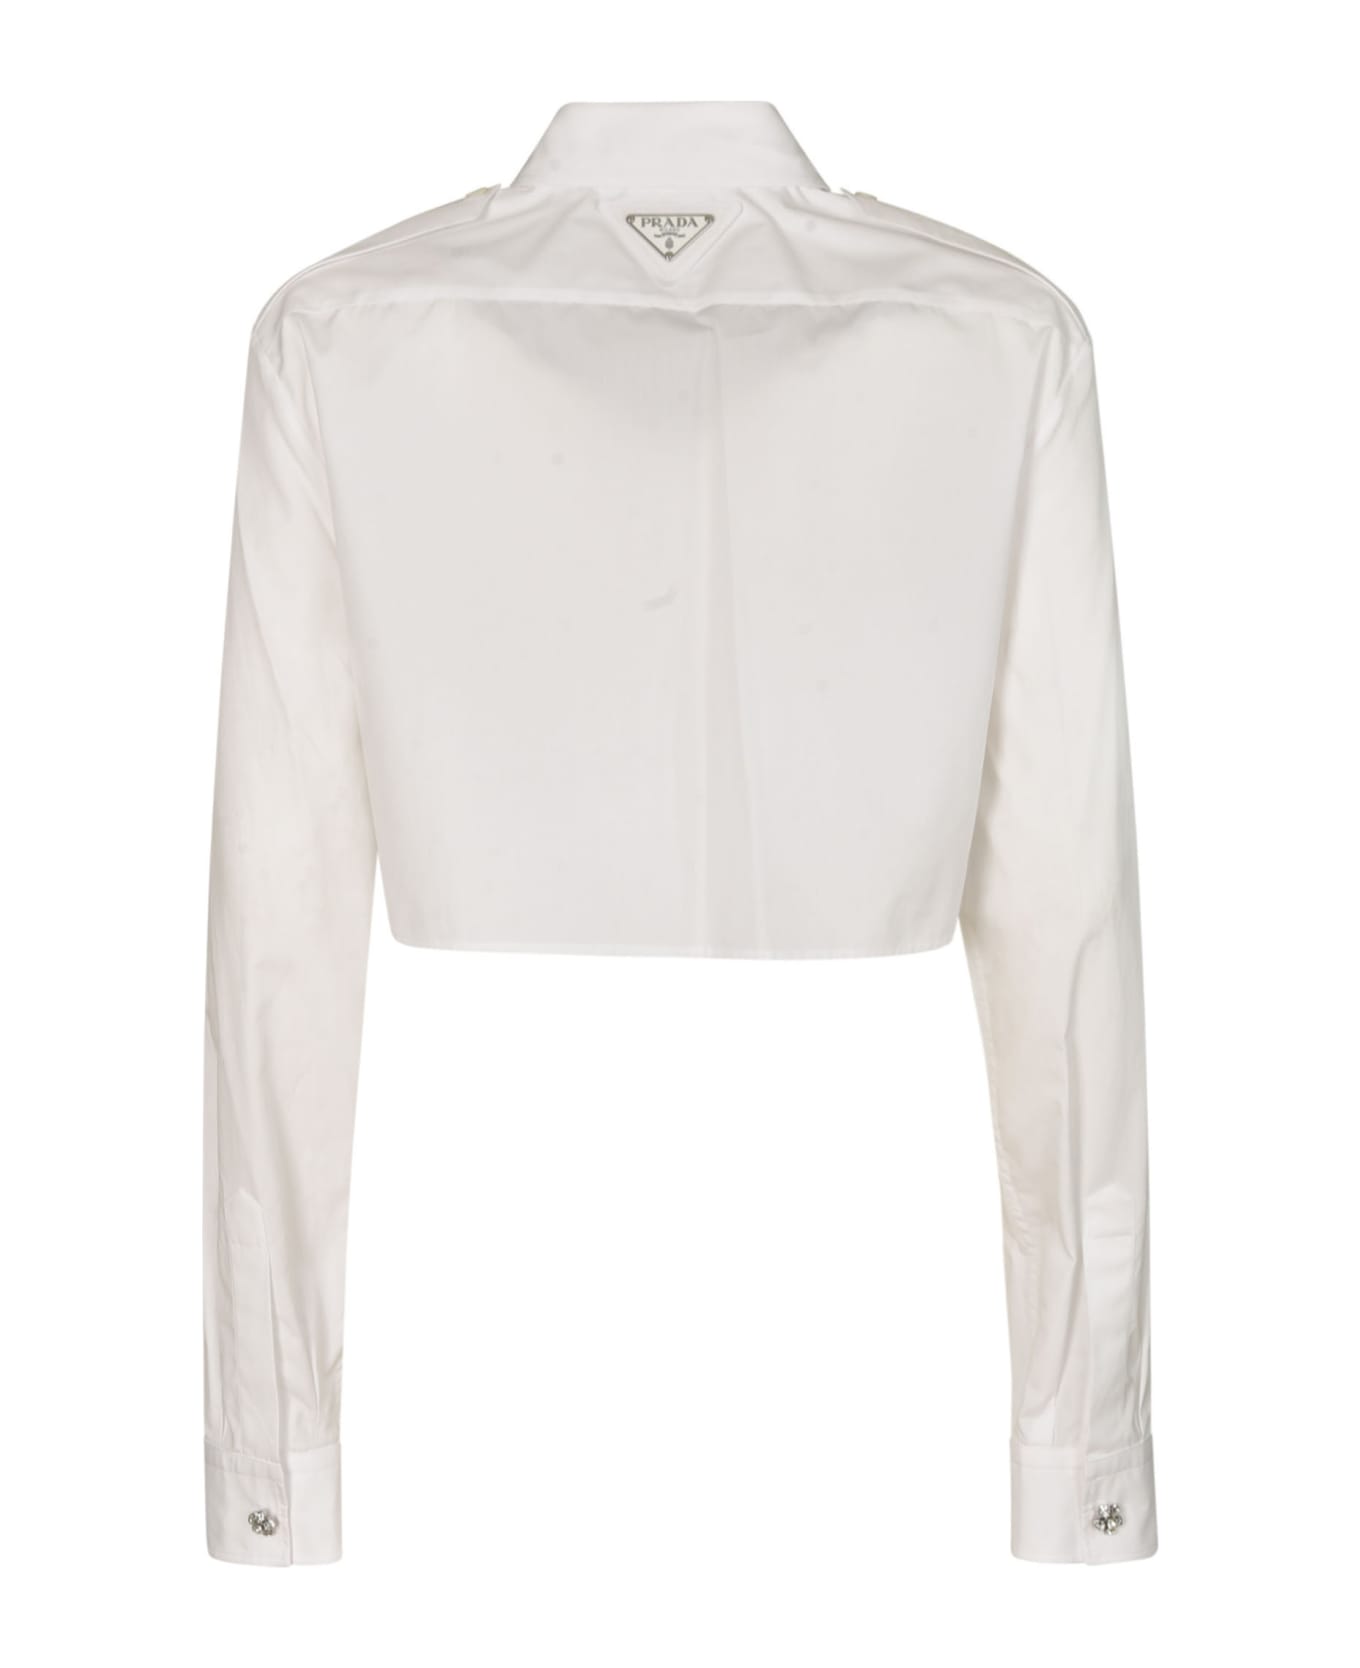 Prada Pocket Front Cropped Shirt - White